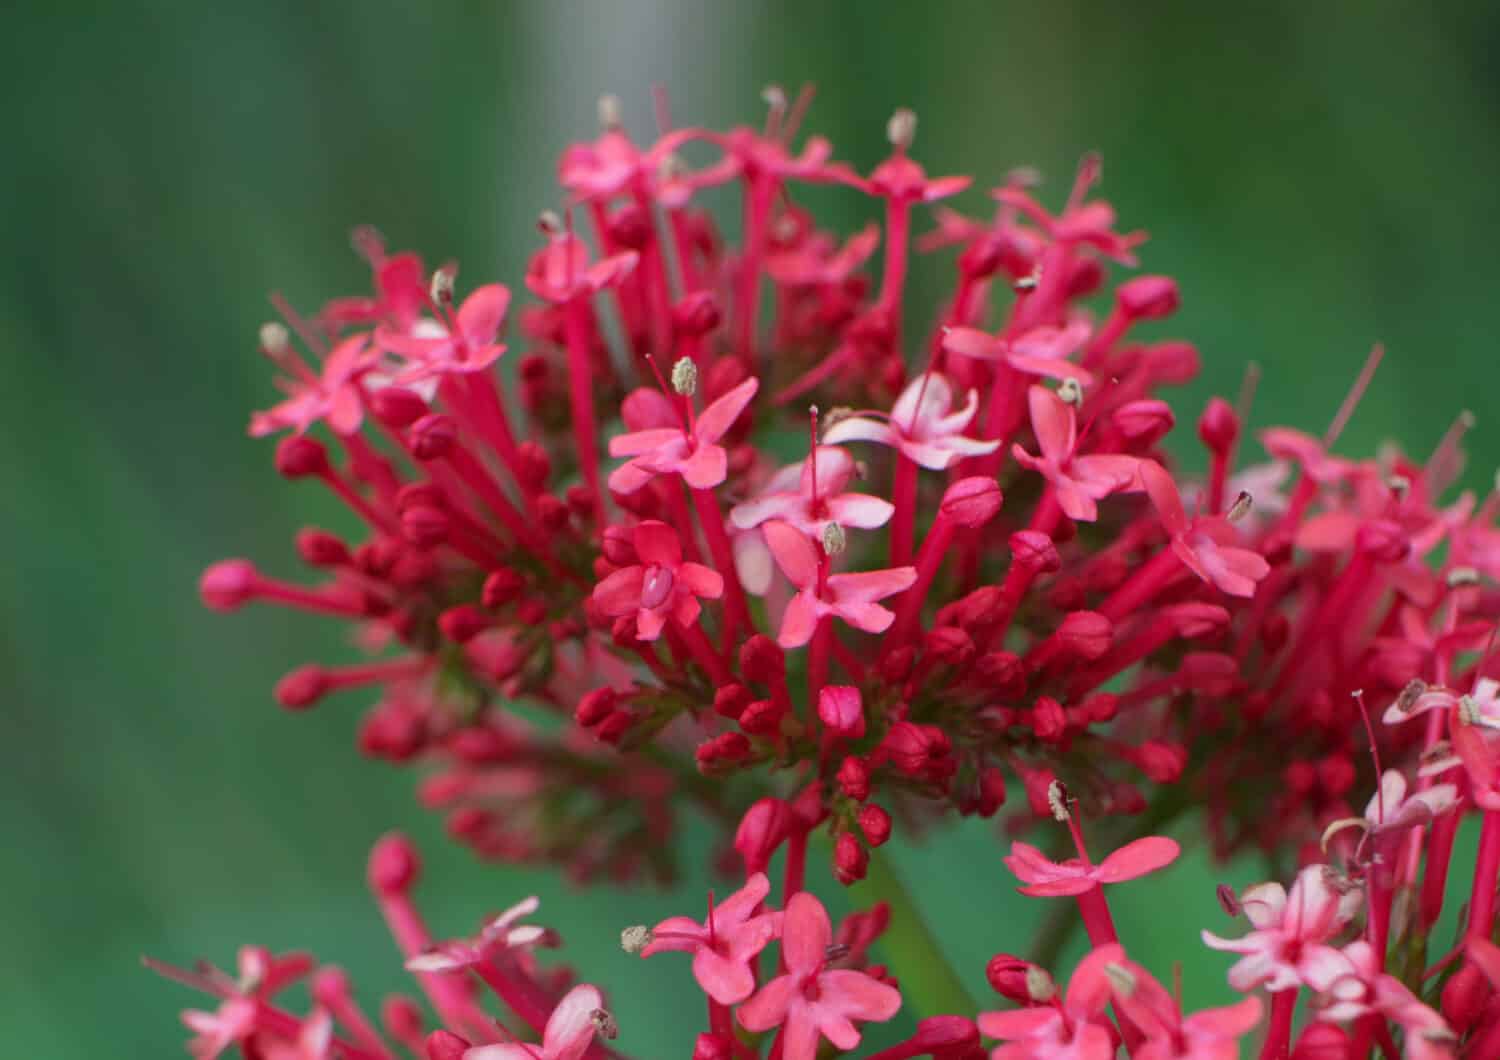 Red Valerian in flower, macro